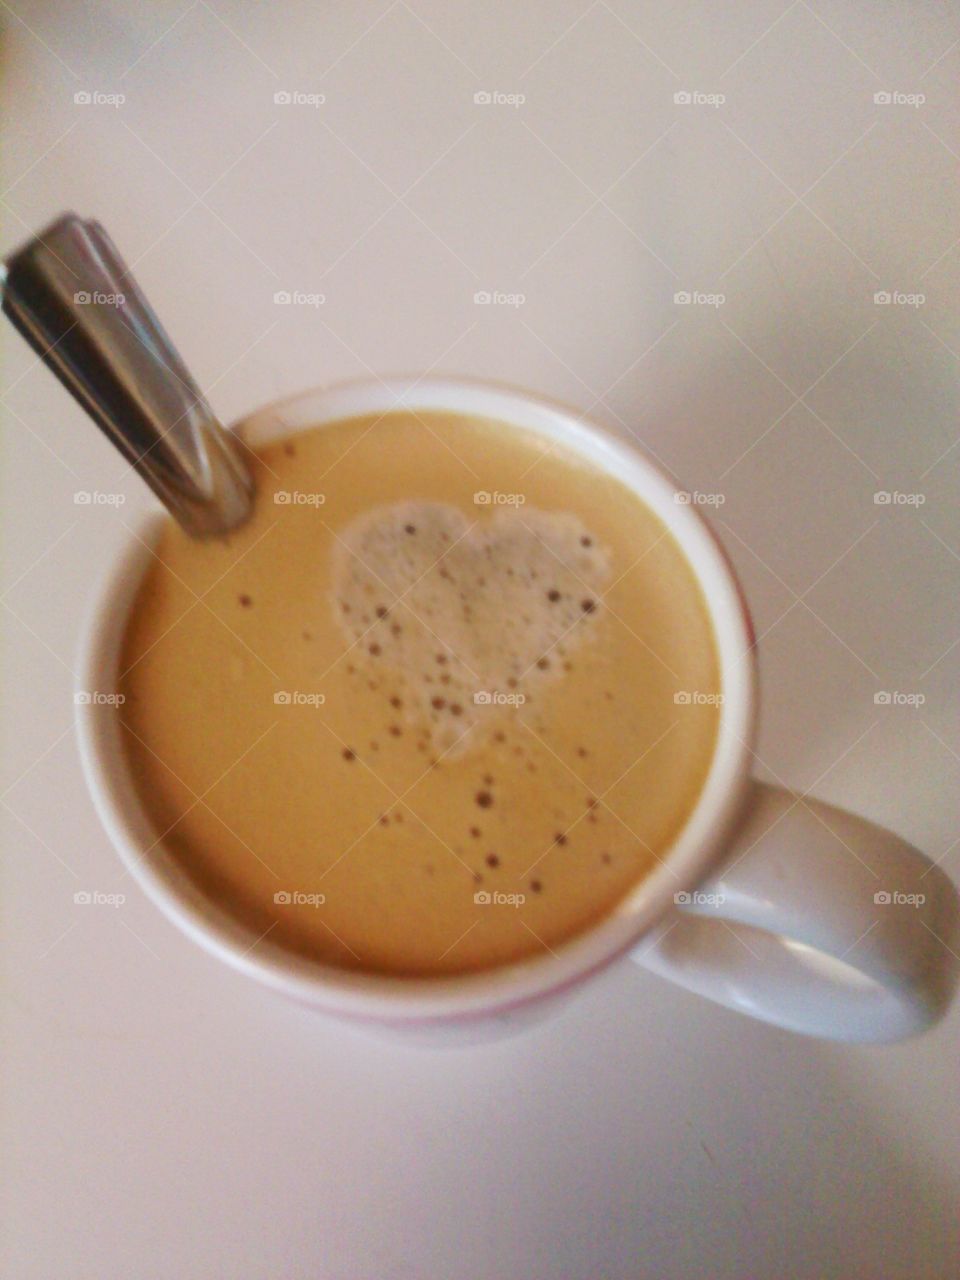 I love my coffee